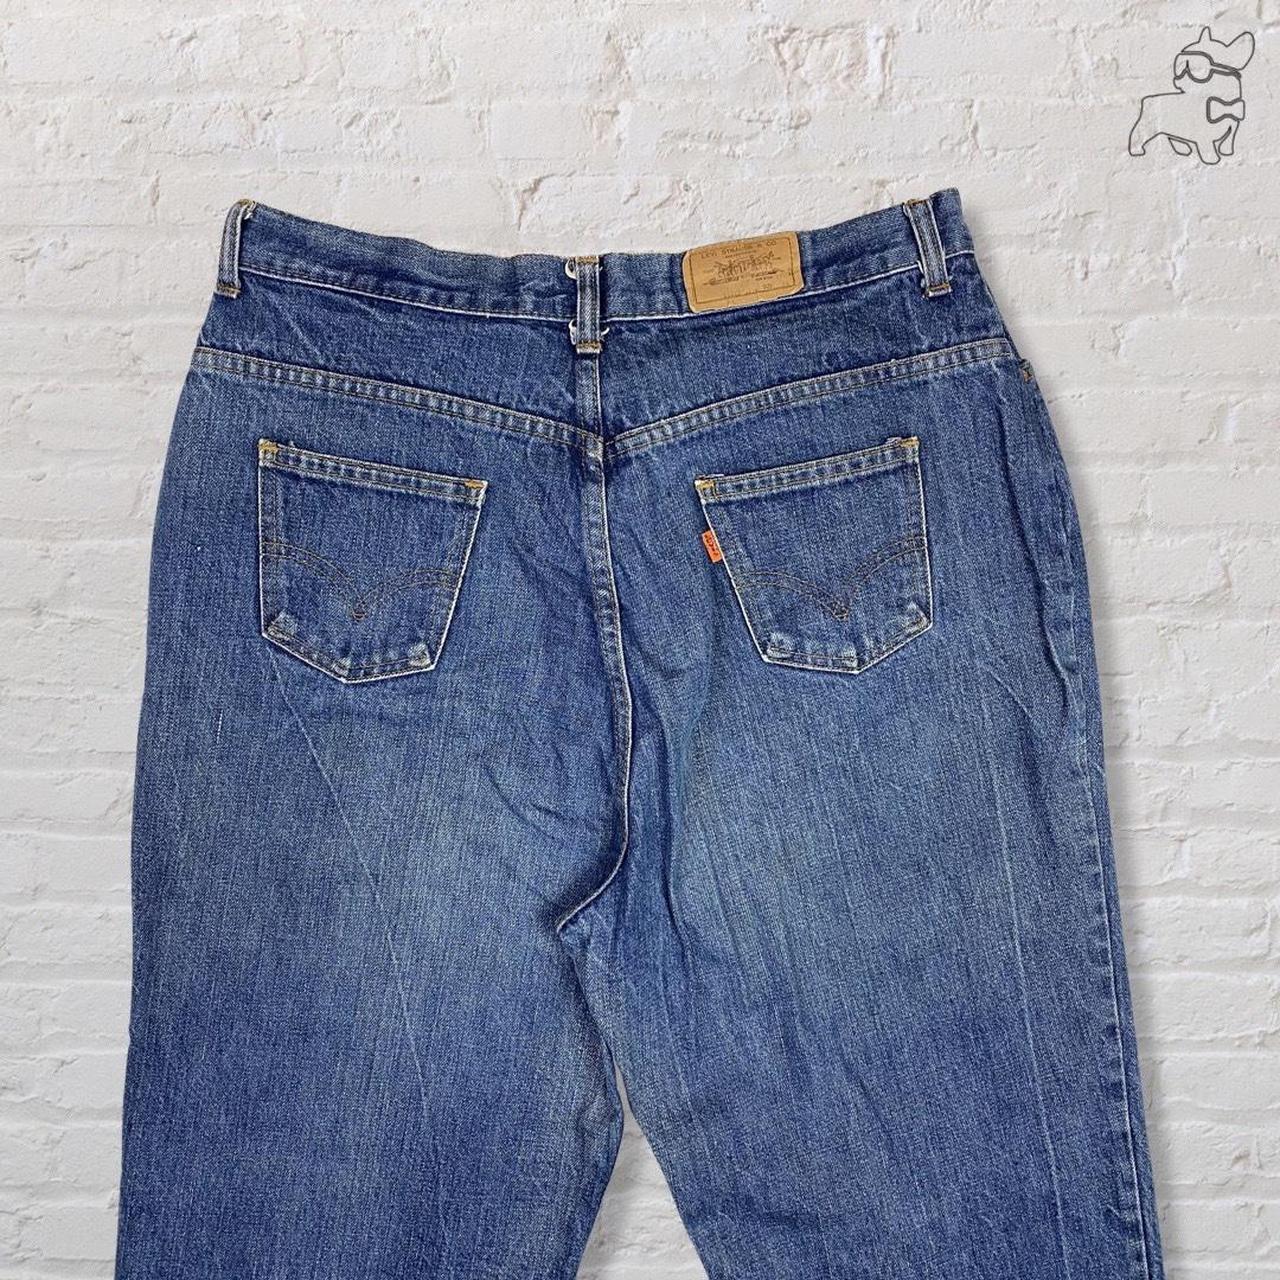 Levi's blue jeans high waist regular straight fit... - Depop